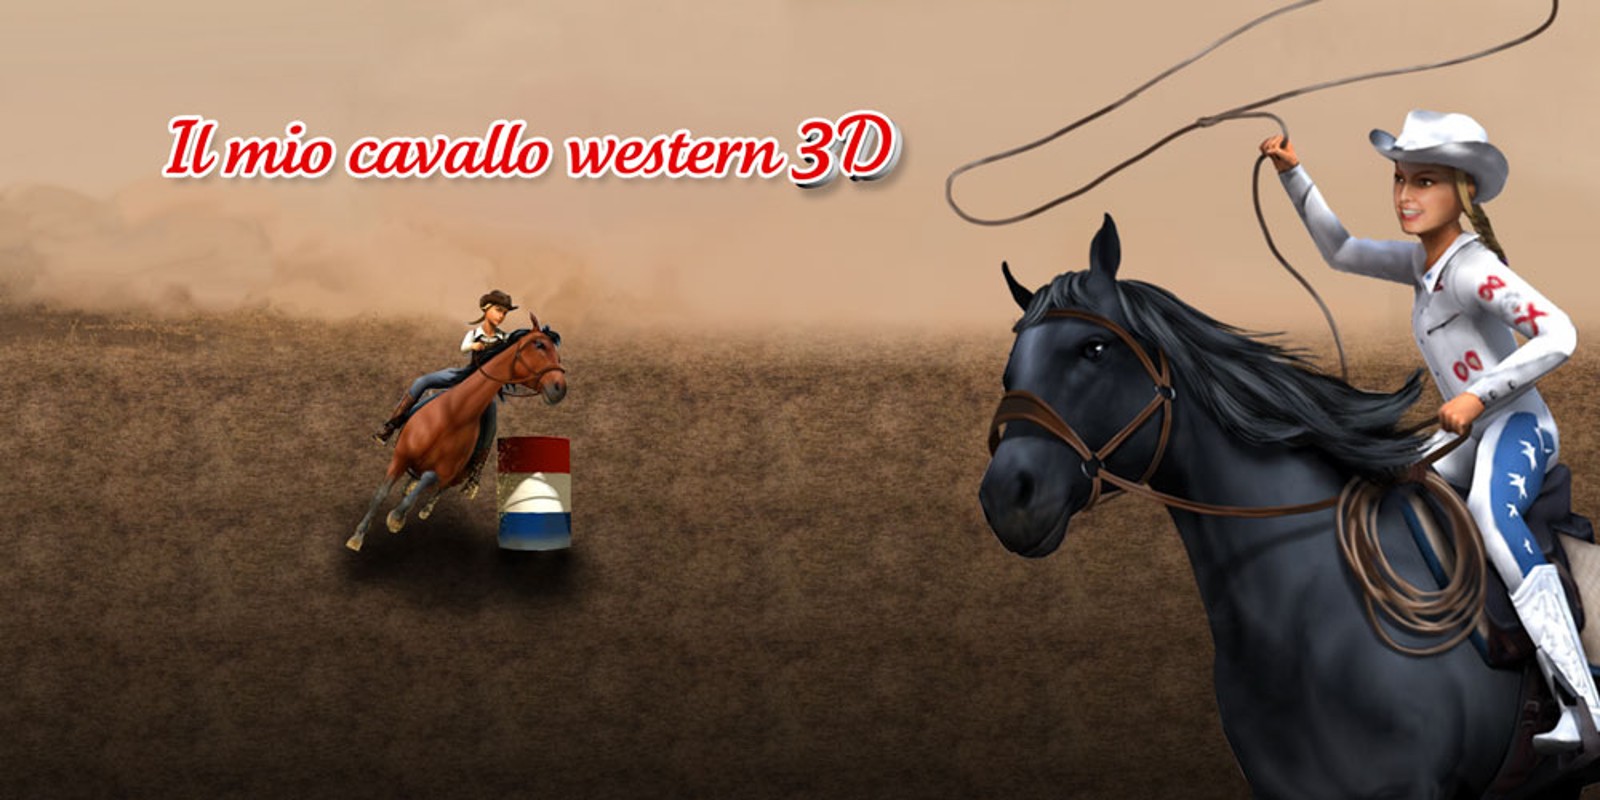 Il mio cavallo western 3D